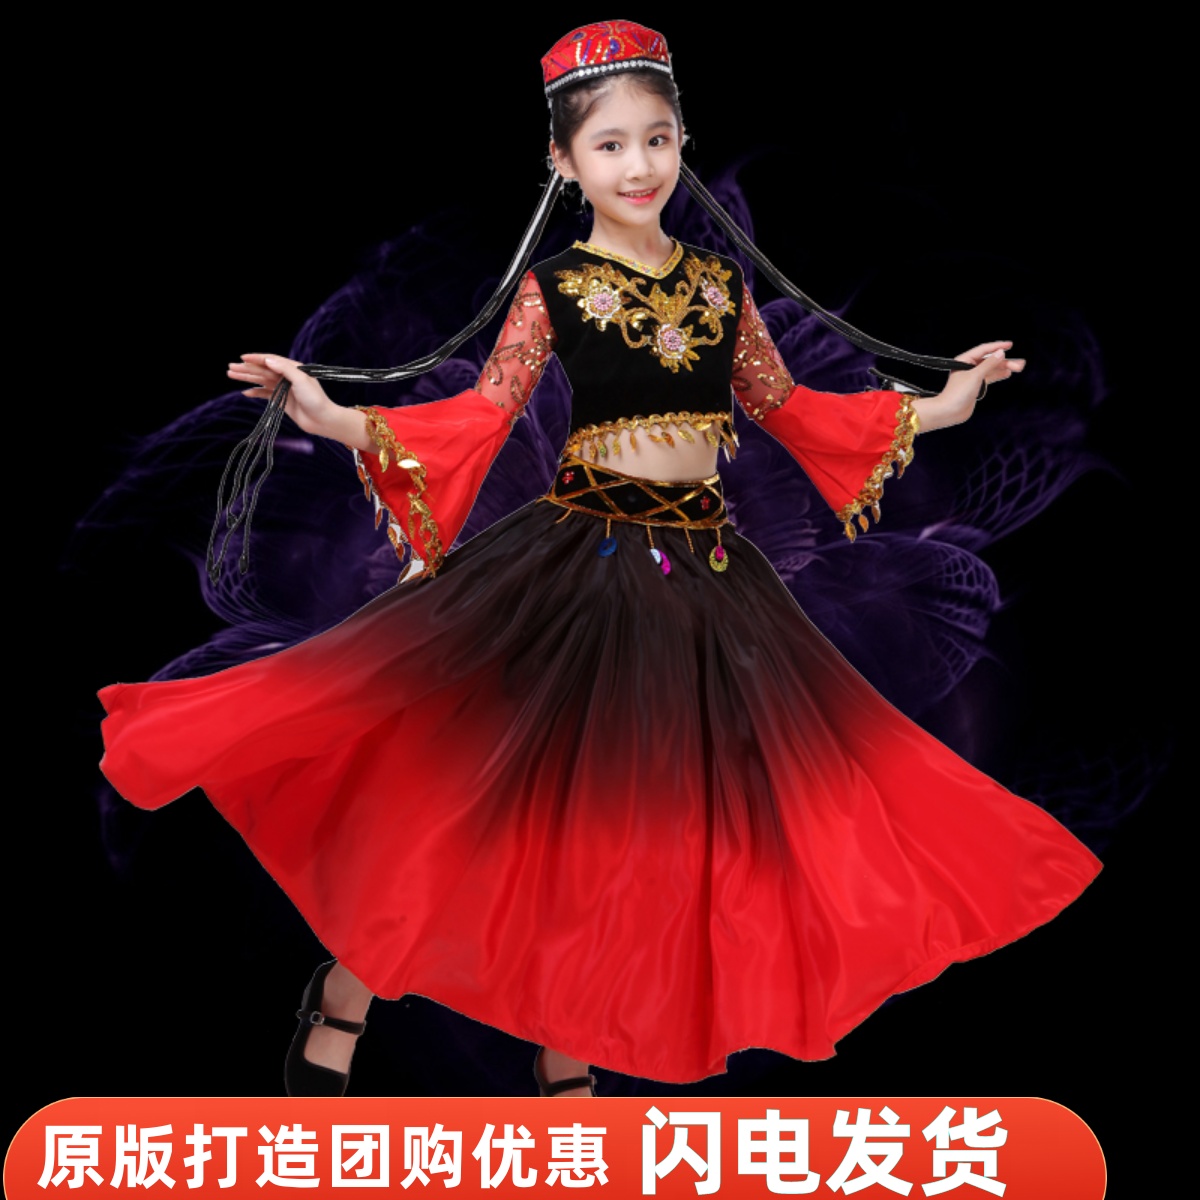 儿童新疆舞蹈服装女童维吾尔族演出服饰幼儿少数民族印度舞表演服